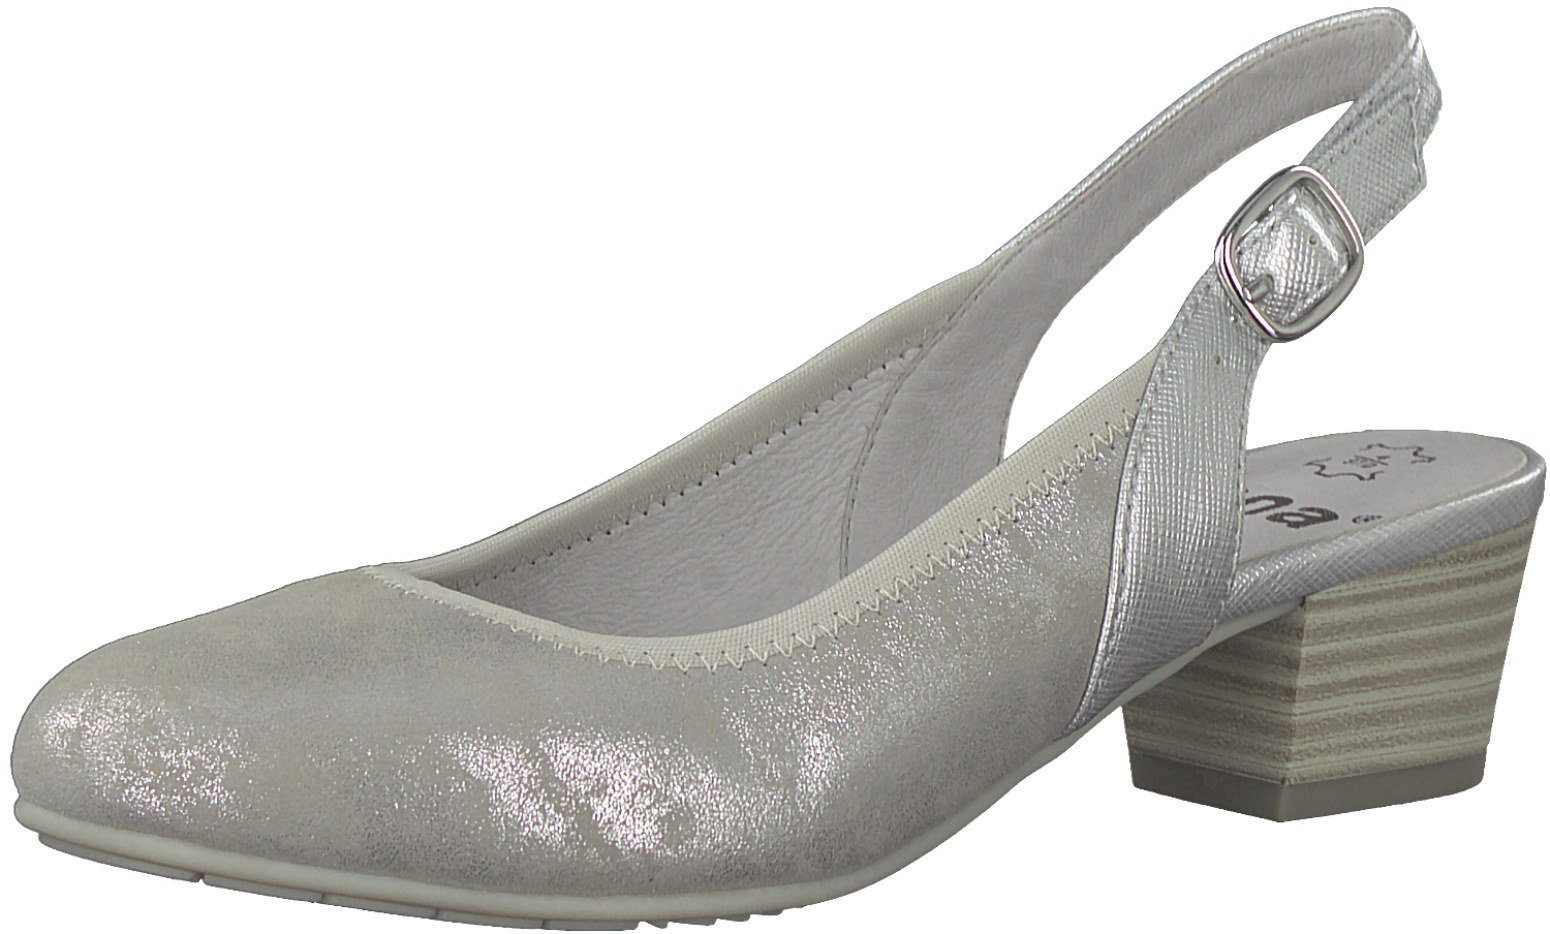 Туфли женские Jana, цвет: серебристый. 8-8-29590-20-212/220. Размер 38